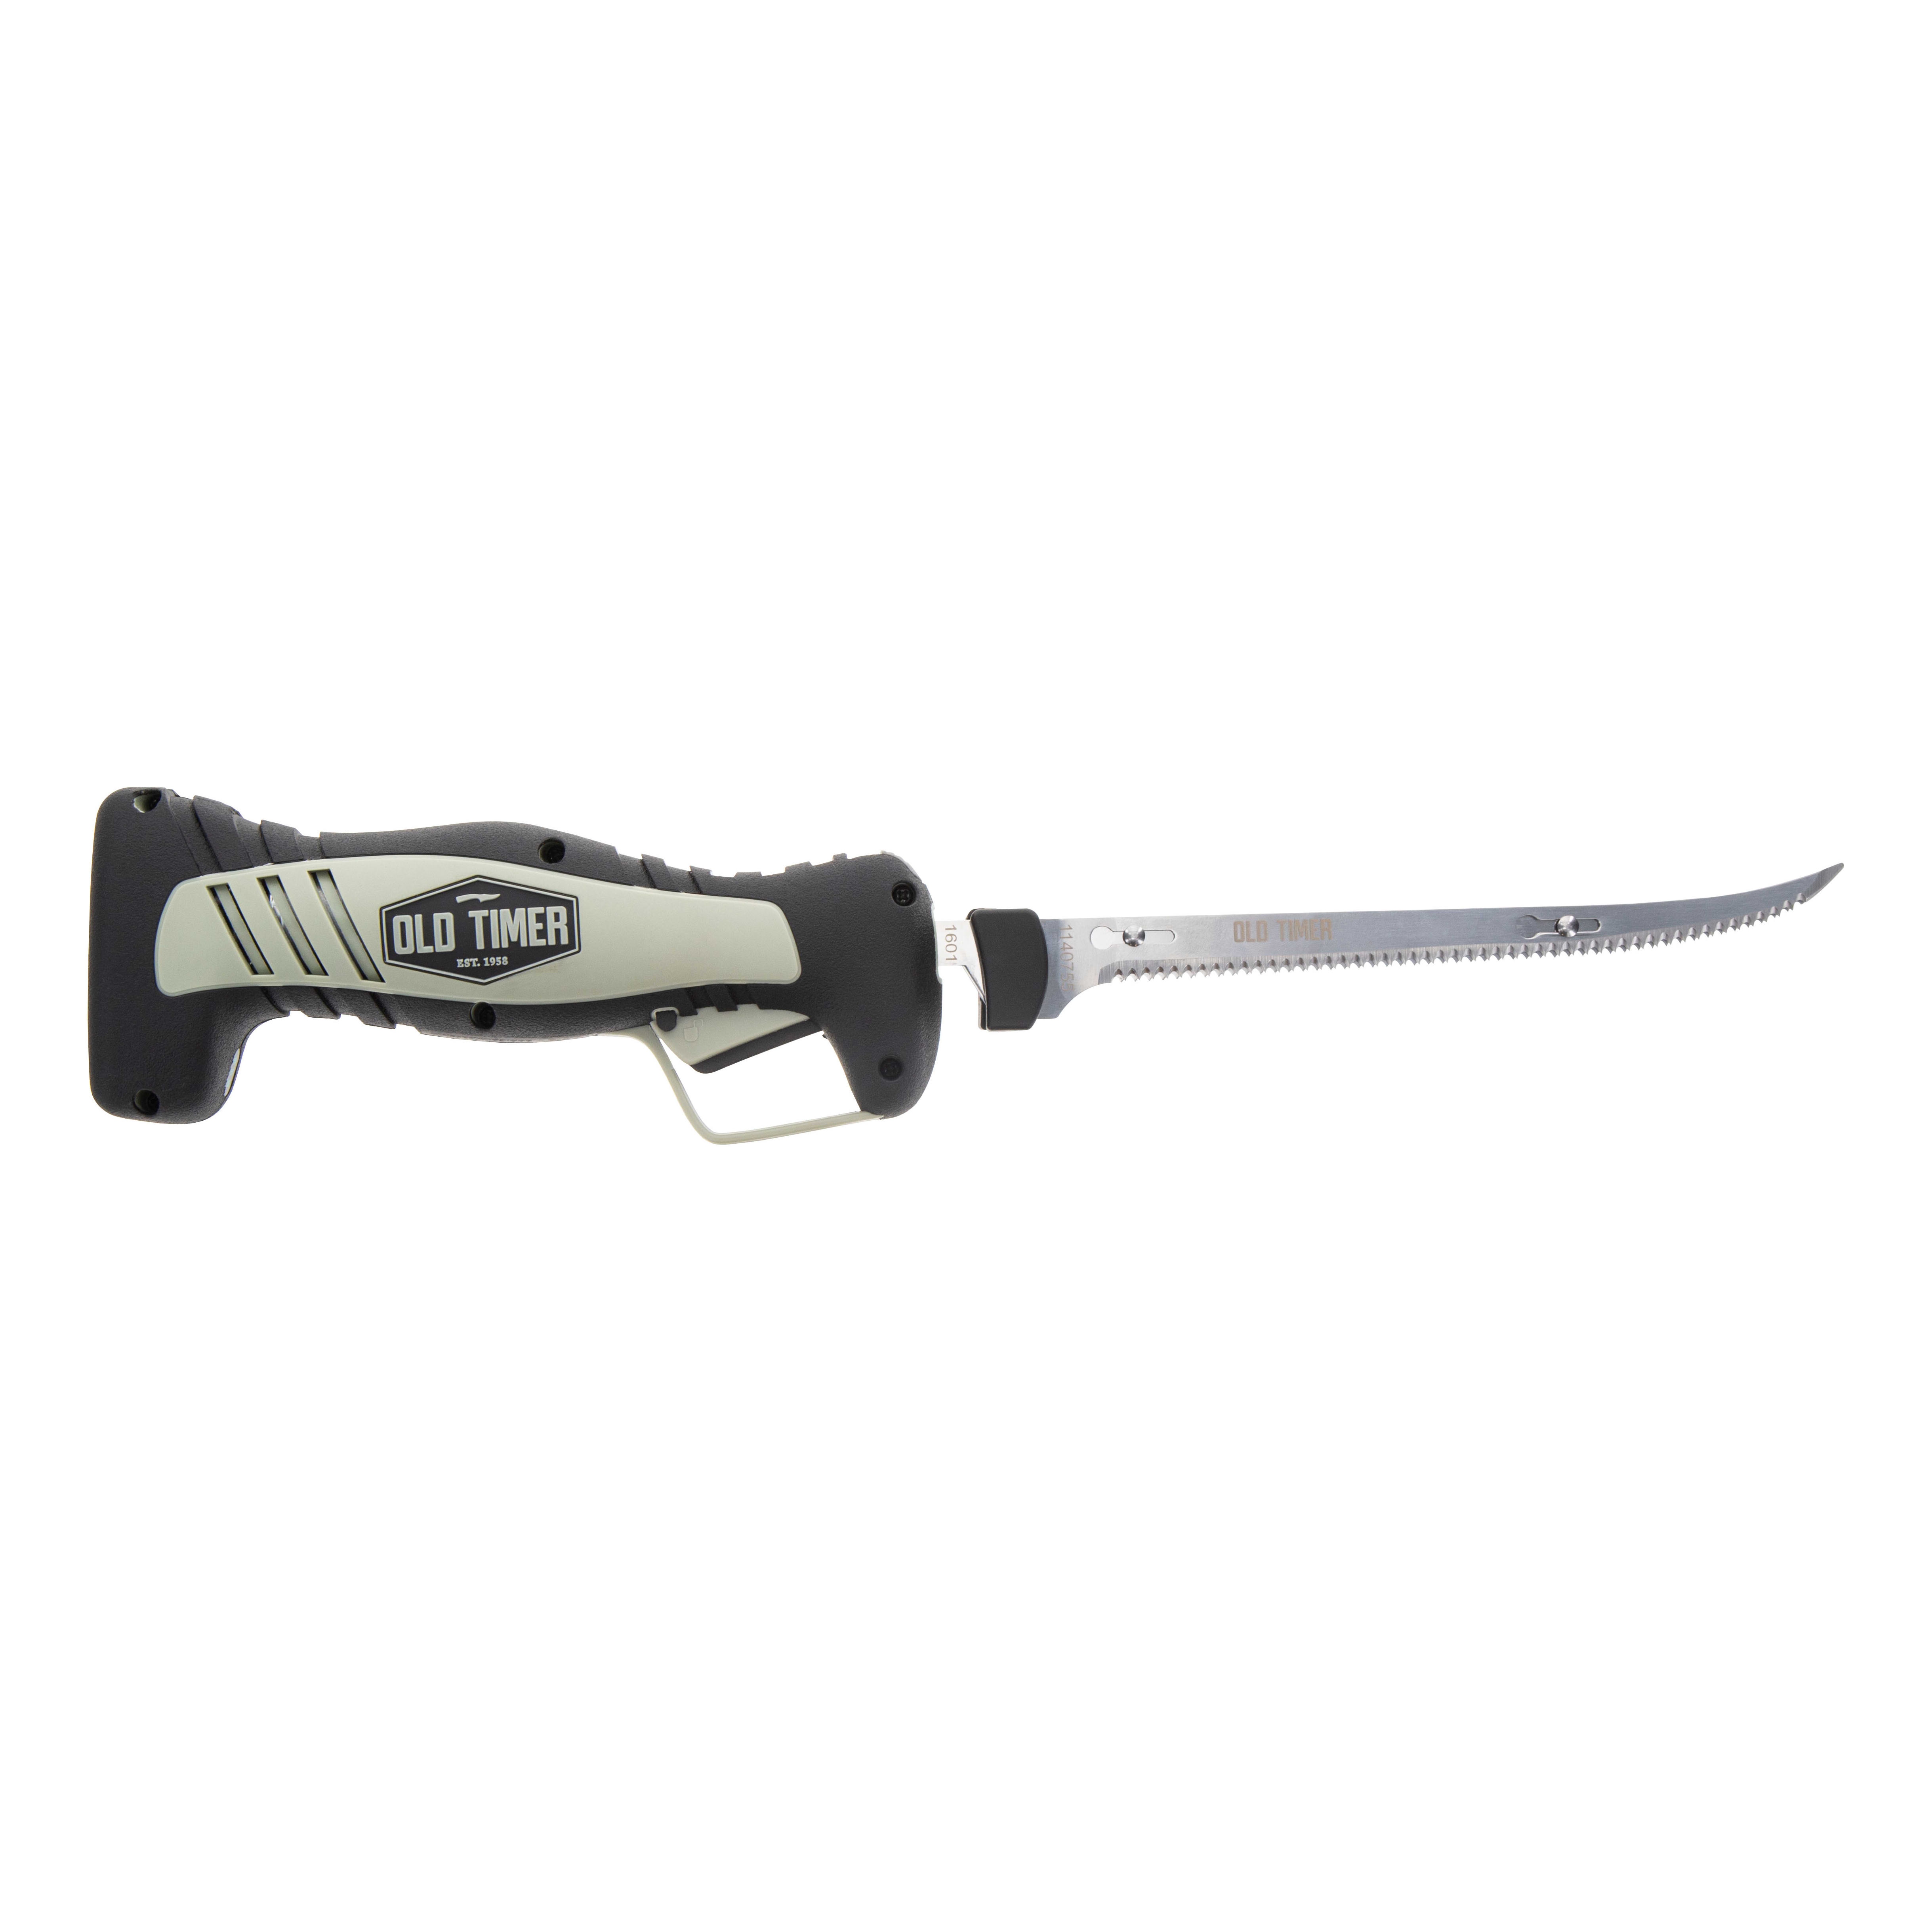 Rapala® Heavy Duty Electric Fillet Knife